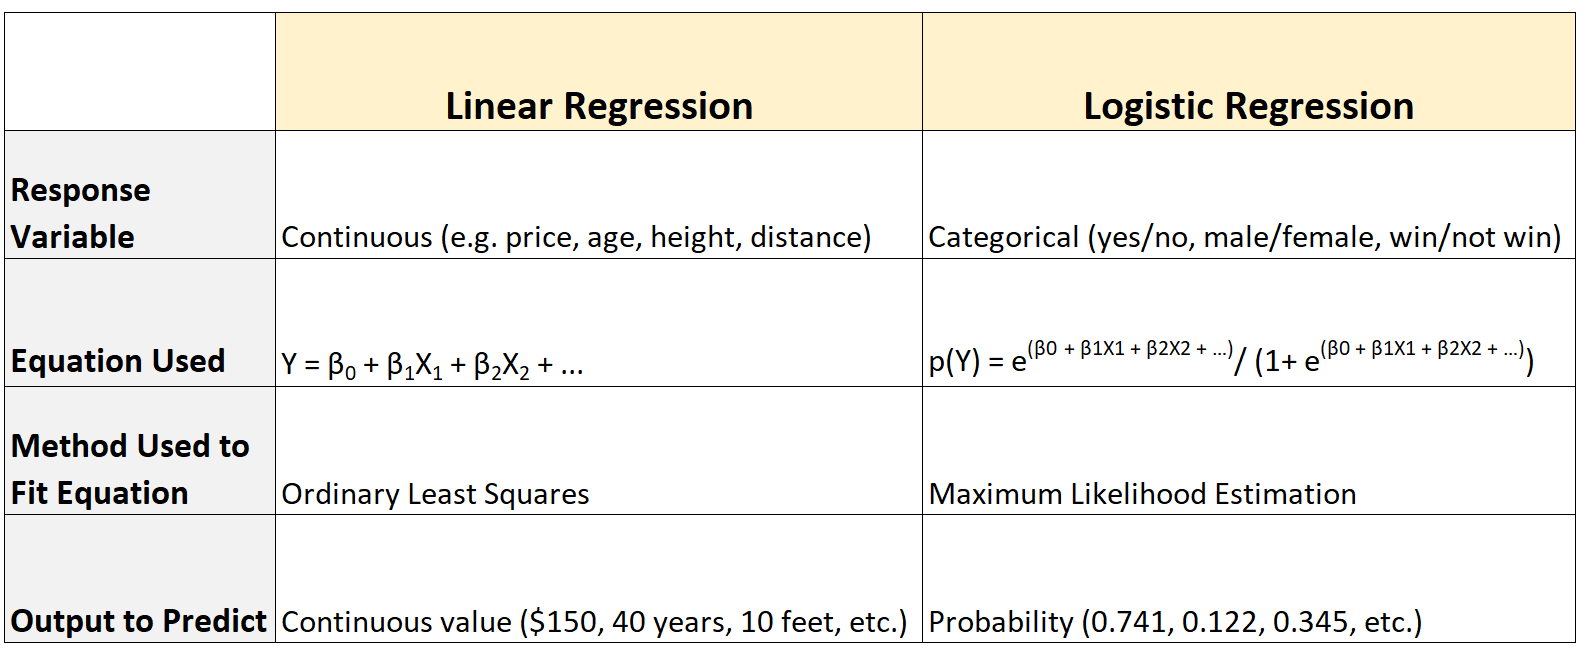 regressione logistica vs regressione lineare